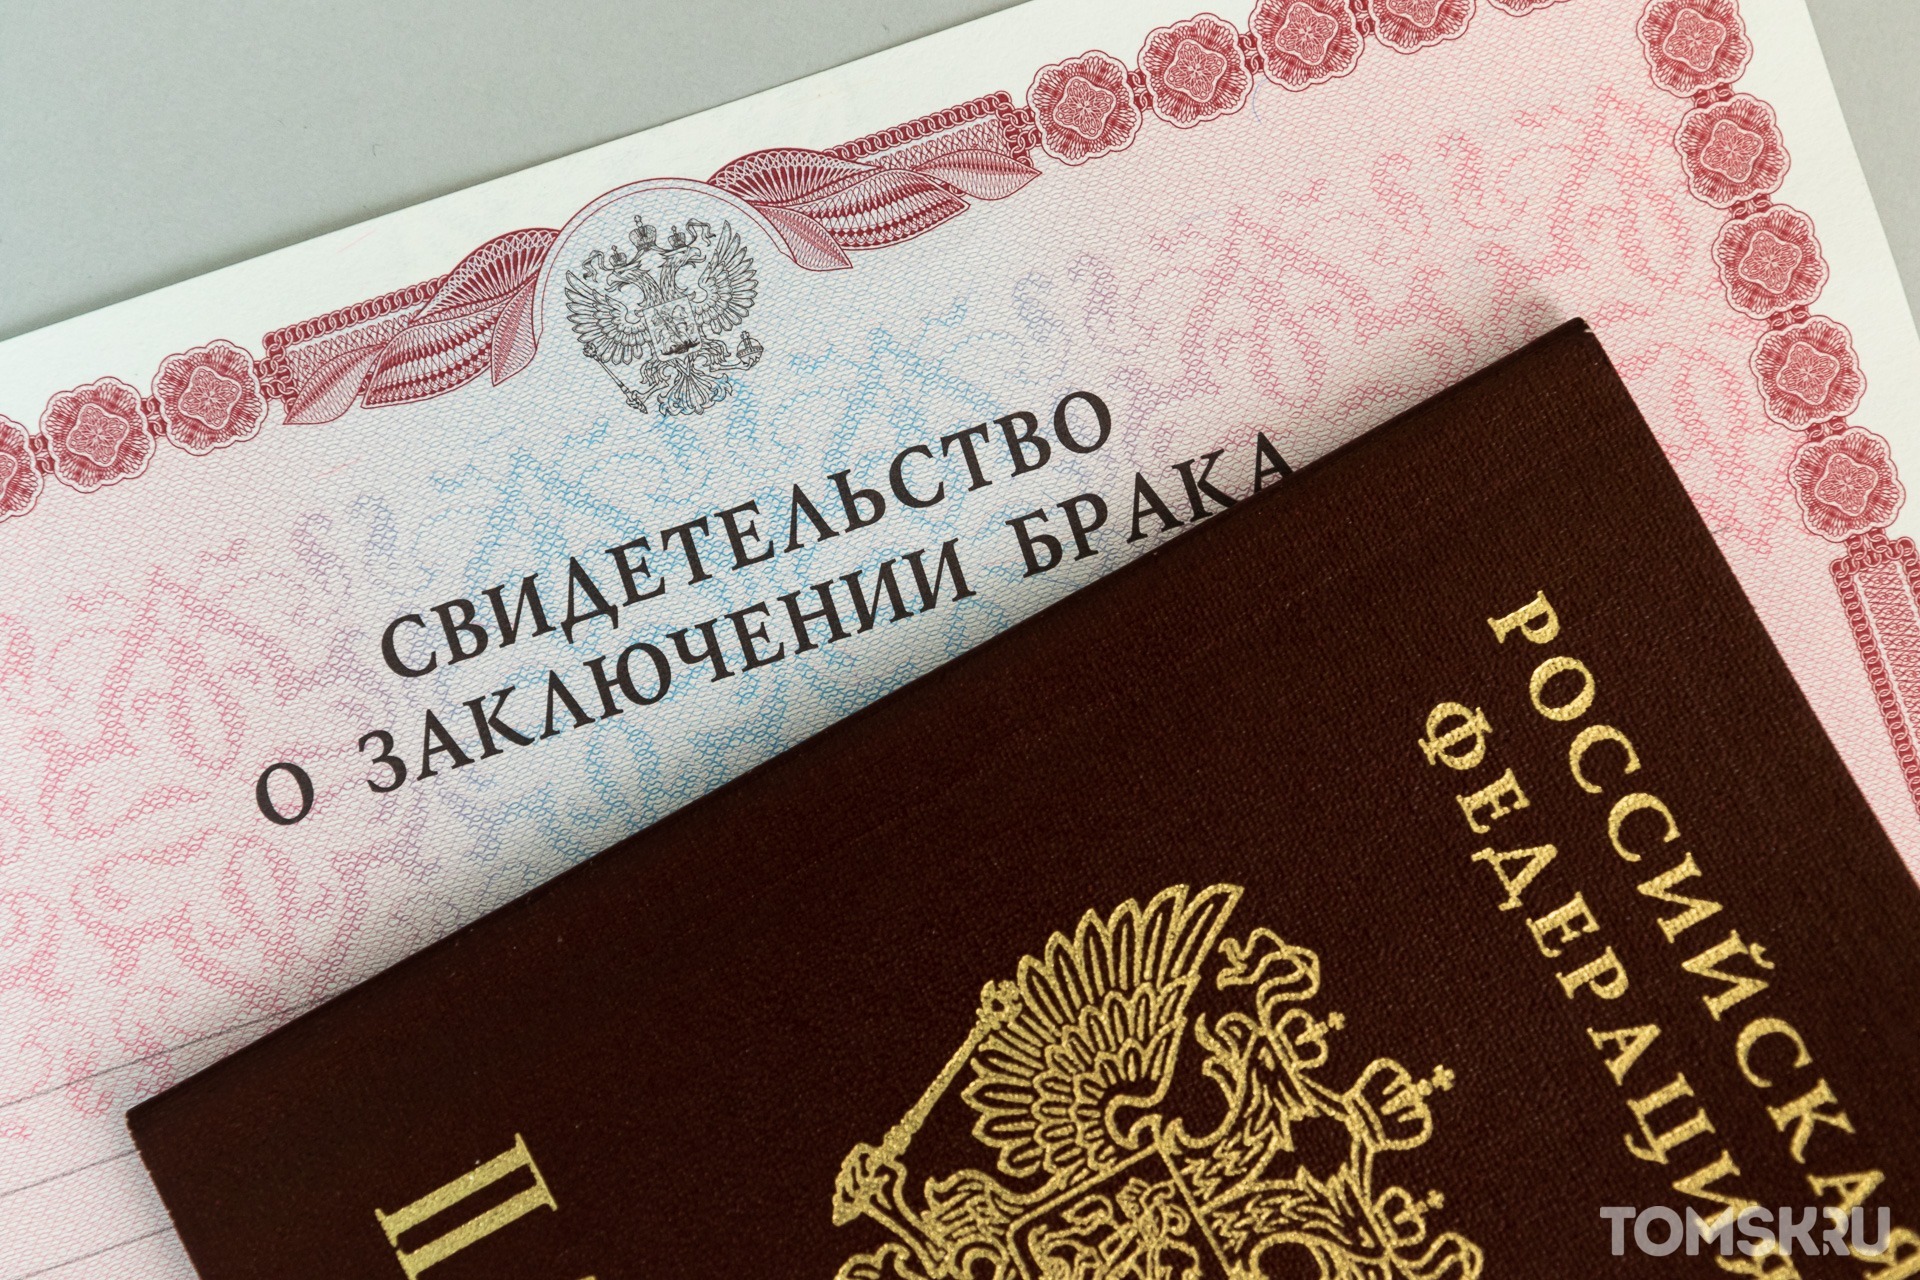 Жители Томской области вступали в незаконные браки с иностранцами